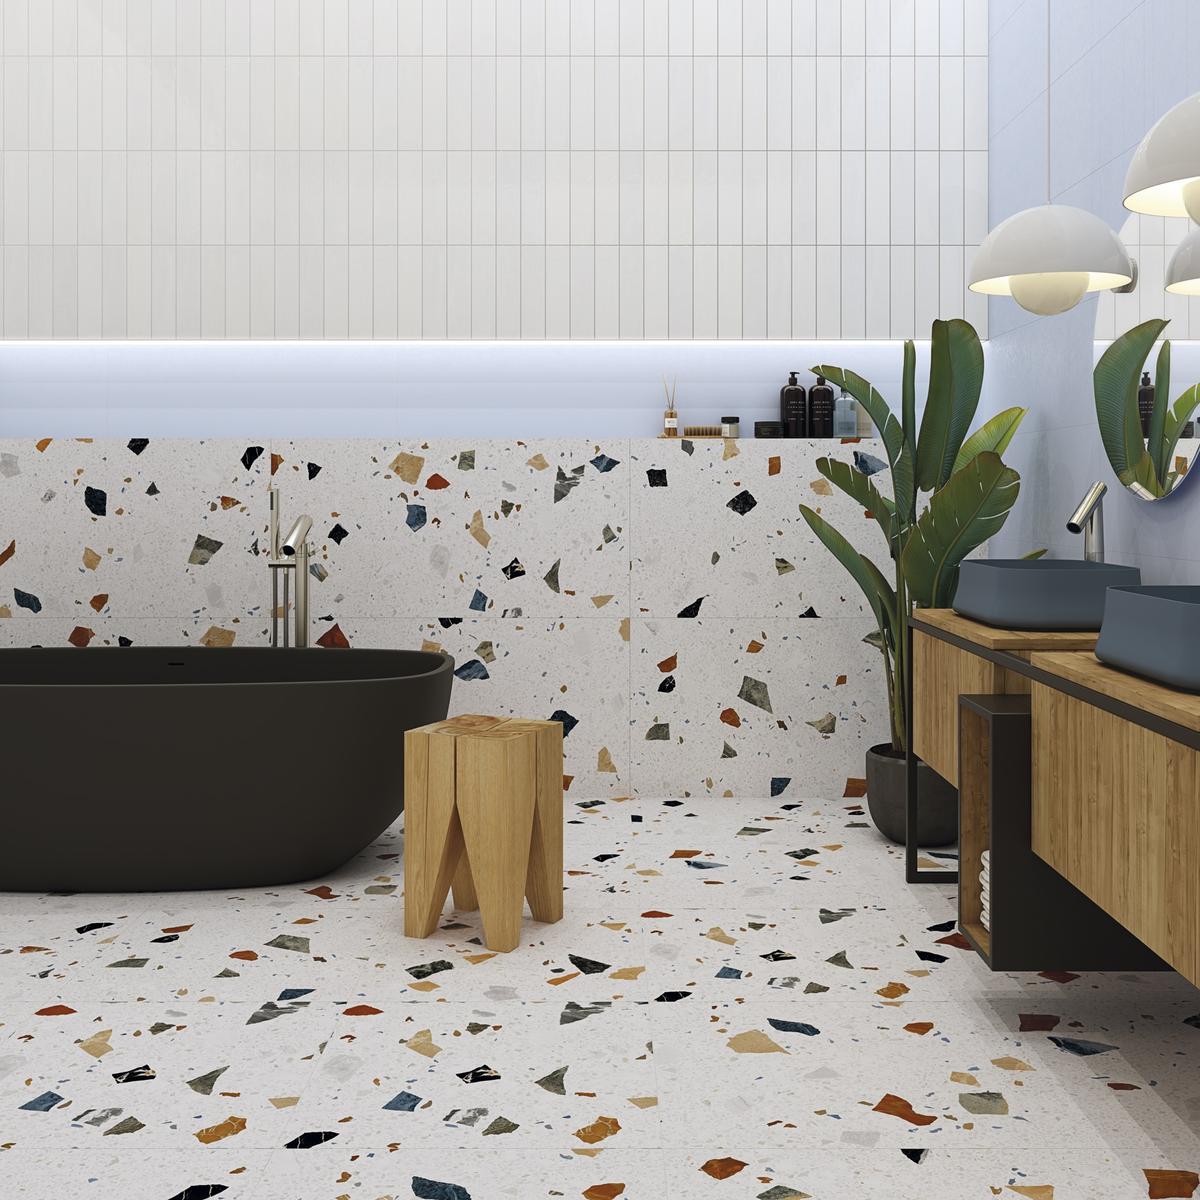 Carrelage Terrazzo blanc avec éclats colorés 60x60 cm dans salle de bain moderne aux murs blancs, meubles bois, baignoire noire